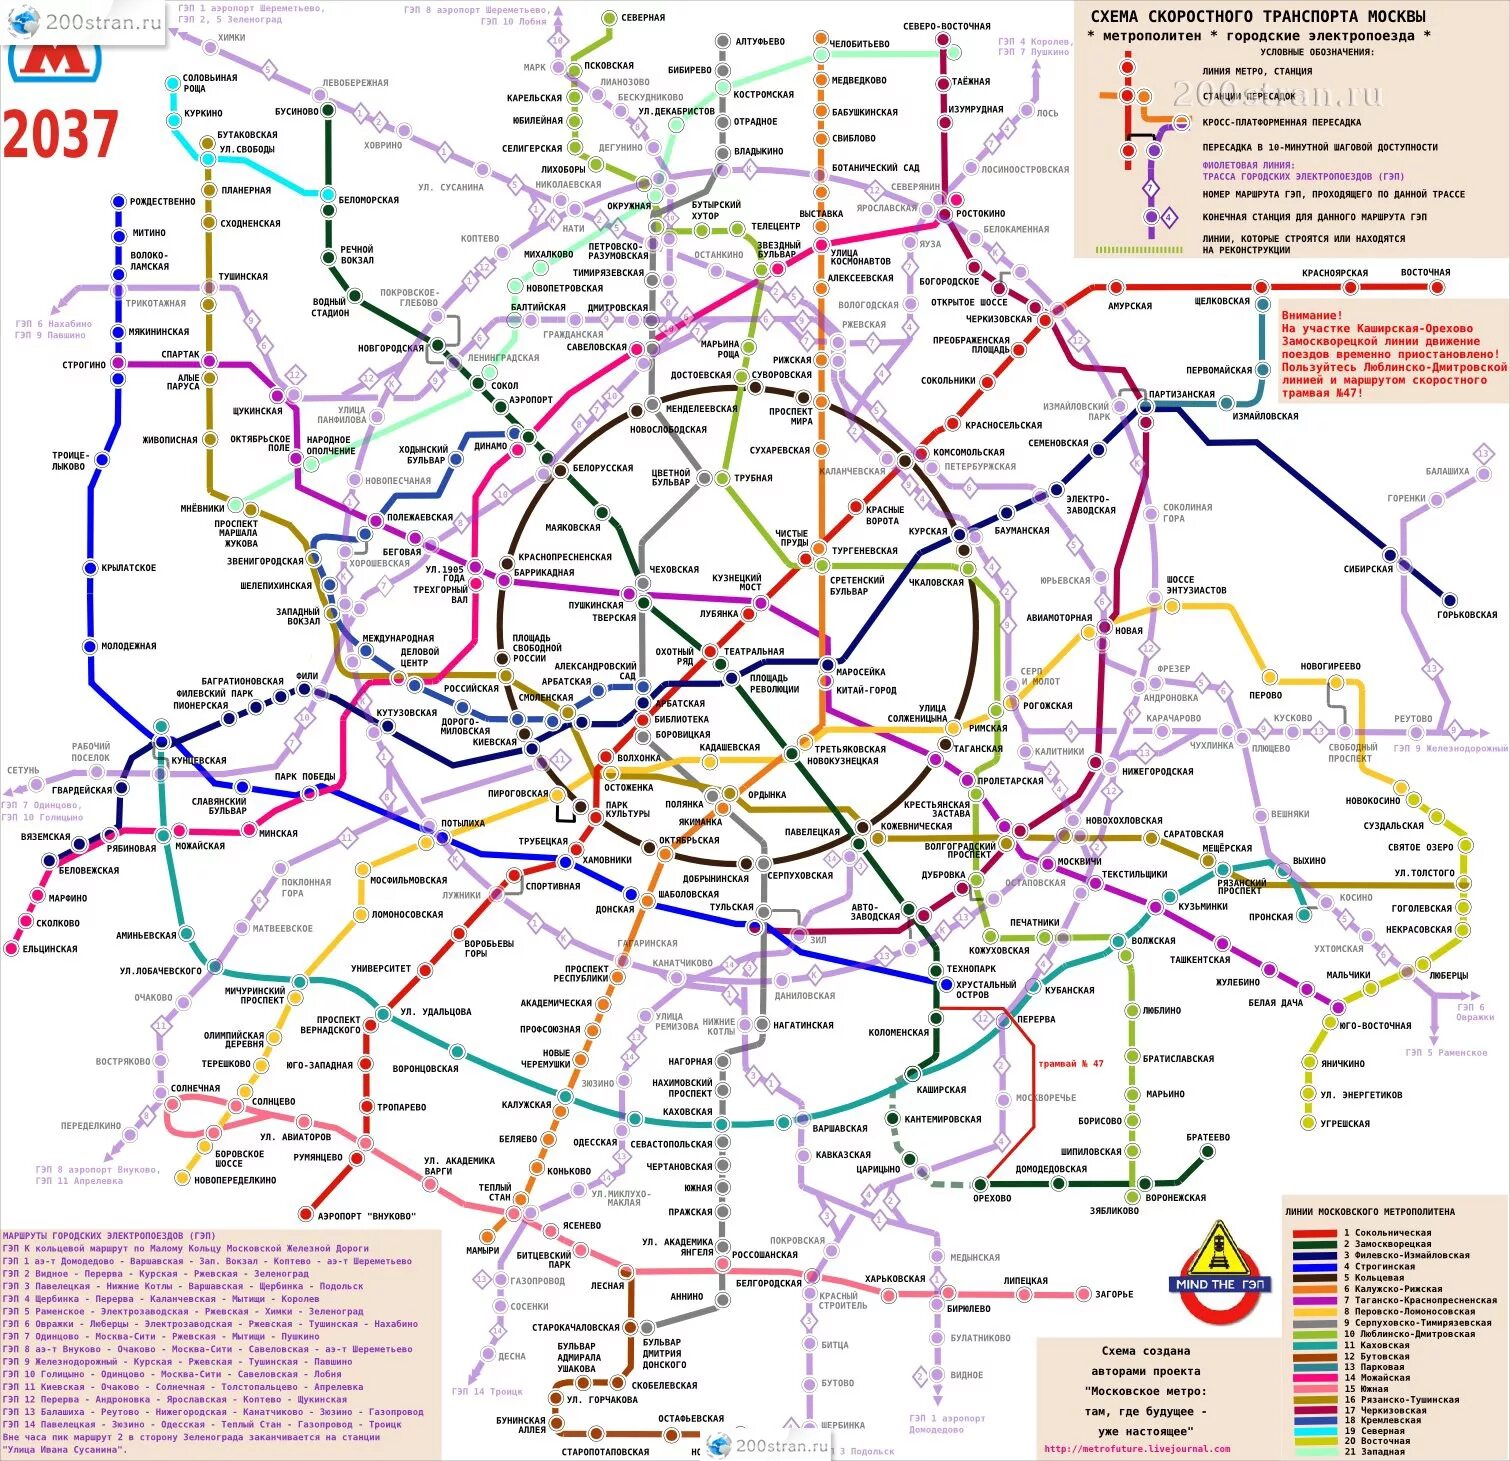 Направление метро москвы. Карта метро 2030 Москва схема. Карта метро до 2027 года Москва. Схема Московского метрополитена 2030 года. План развития метро Москвы до 2035 года схема.